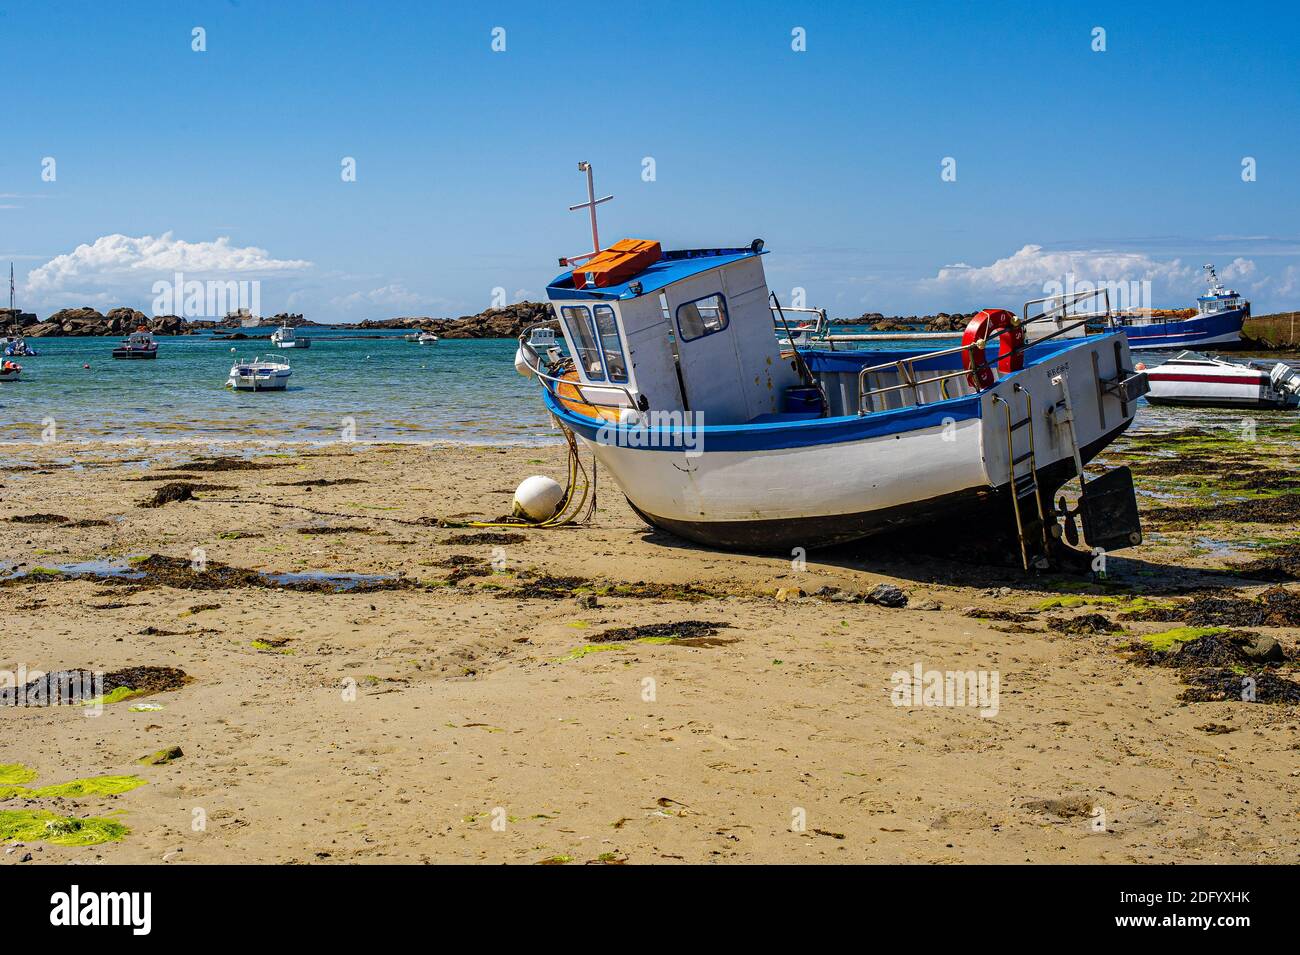 Bateau toronné bateau de pêche sur une plage en Bretagne, France. Paysage breton en été. Un bateau de pêche toronné sur le sable à marée basse. Banque D'Images